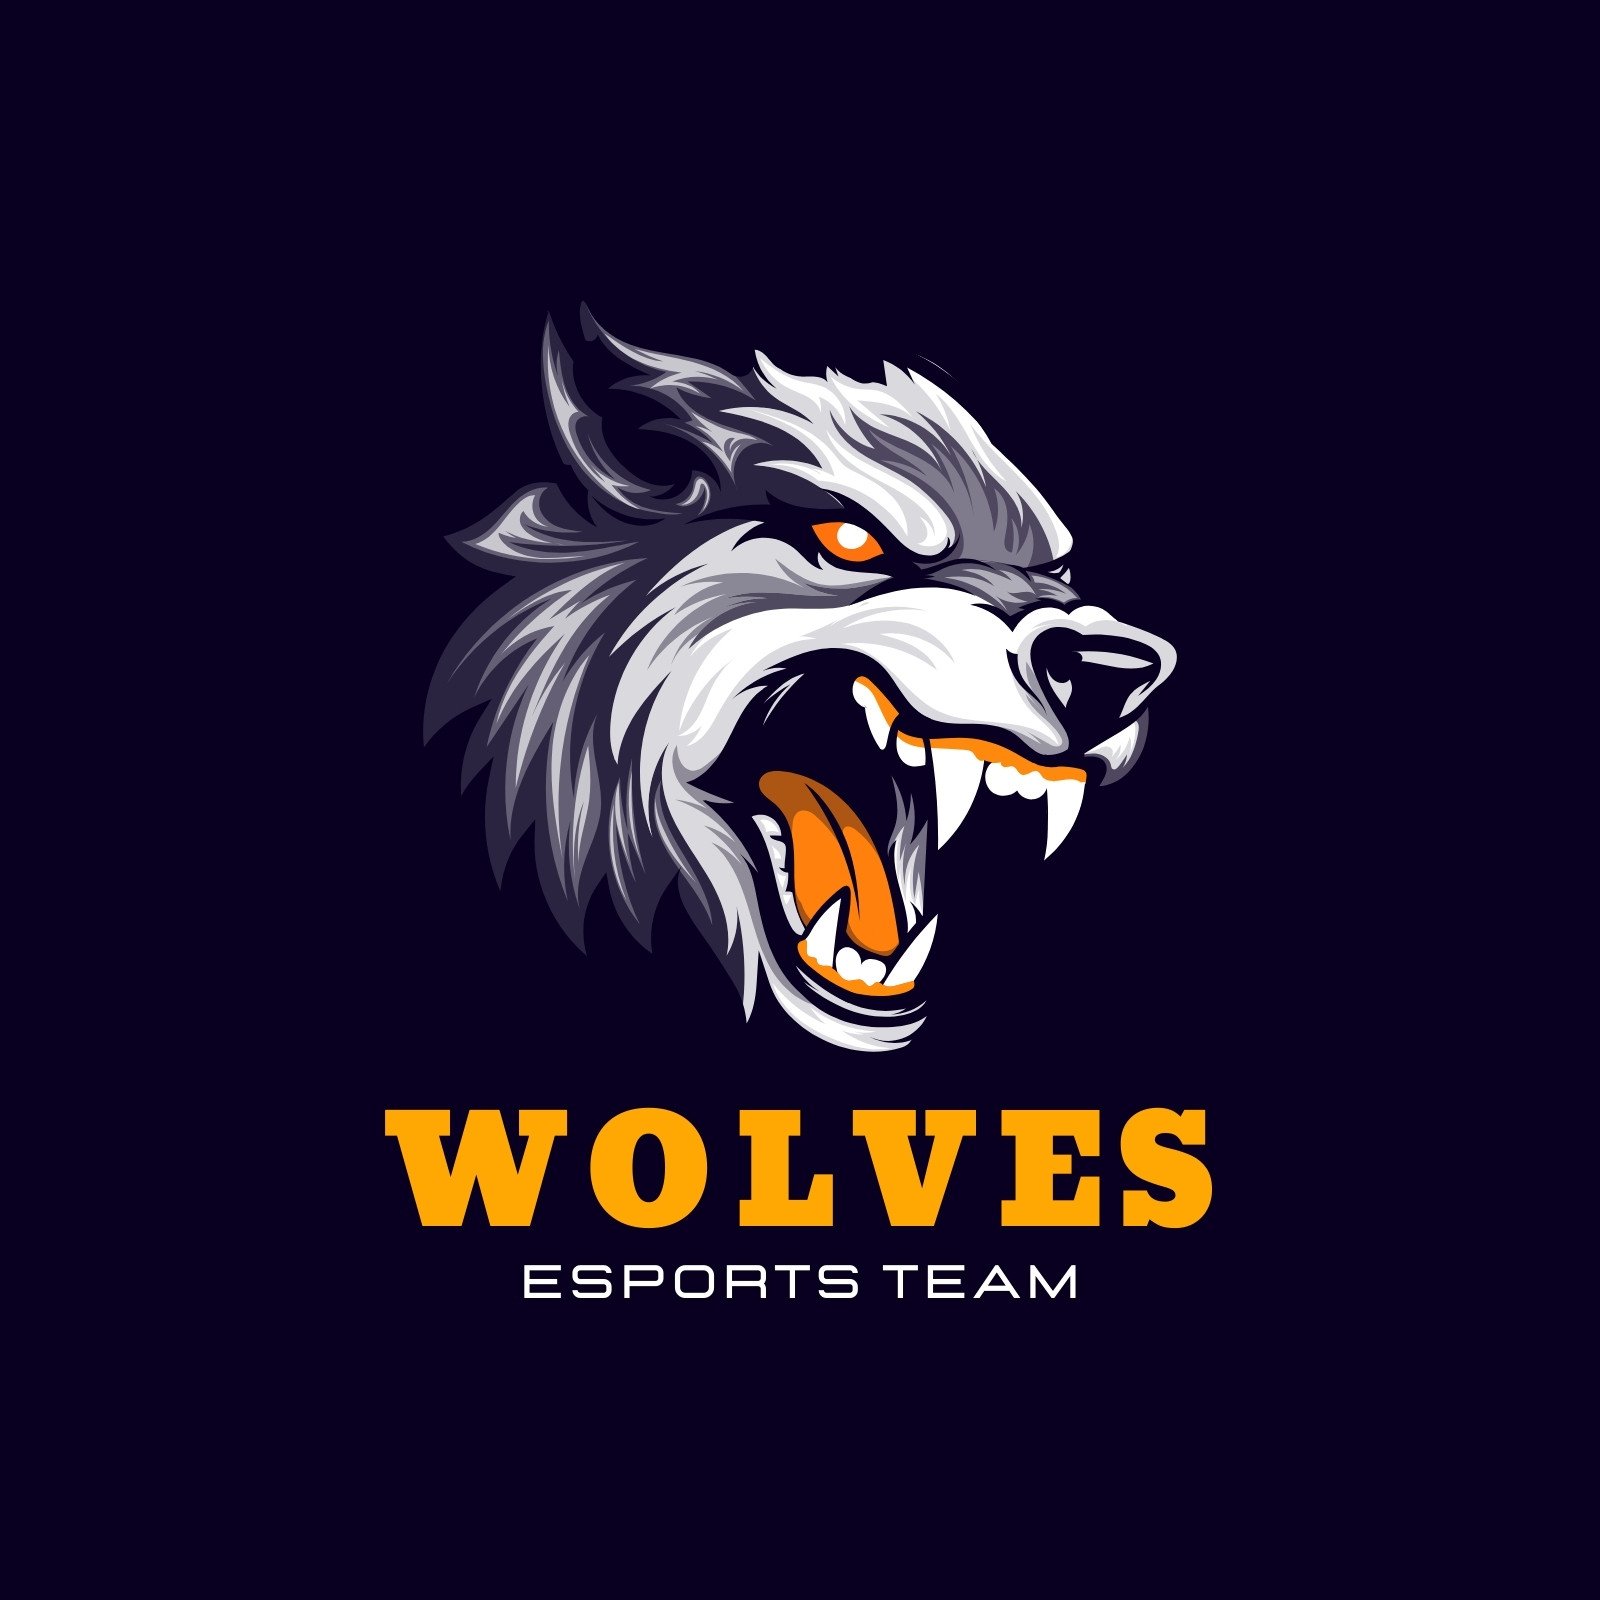 Abstract Wolf Mascot eSports Gaming Logo